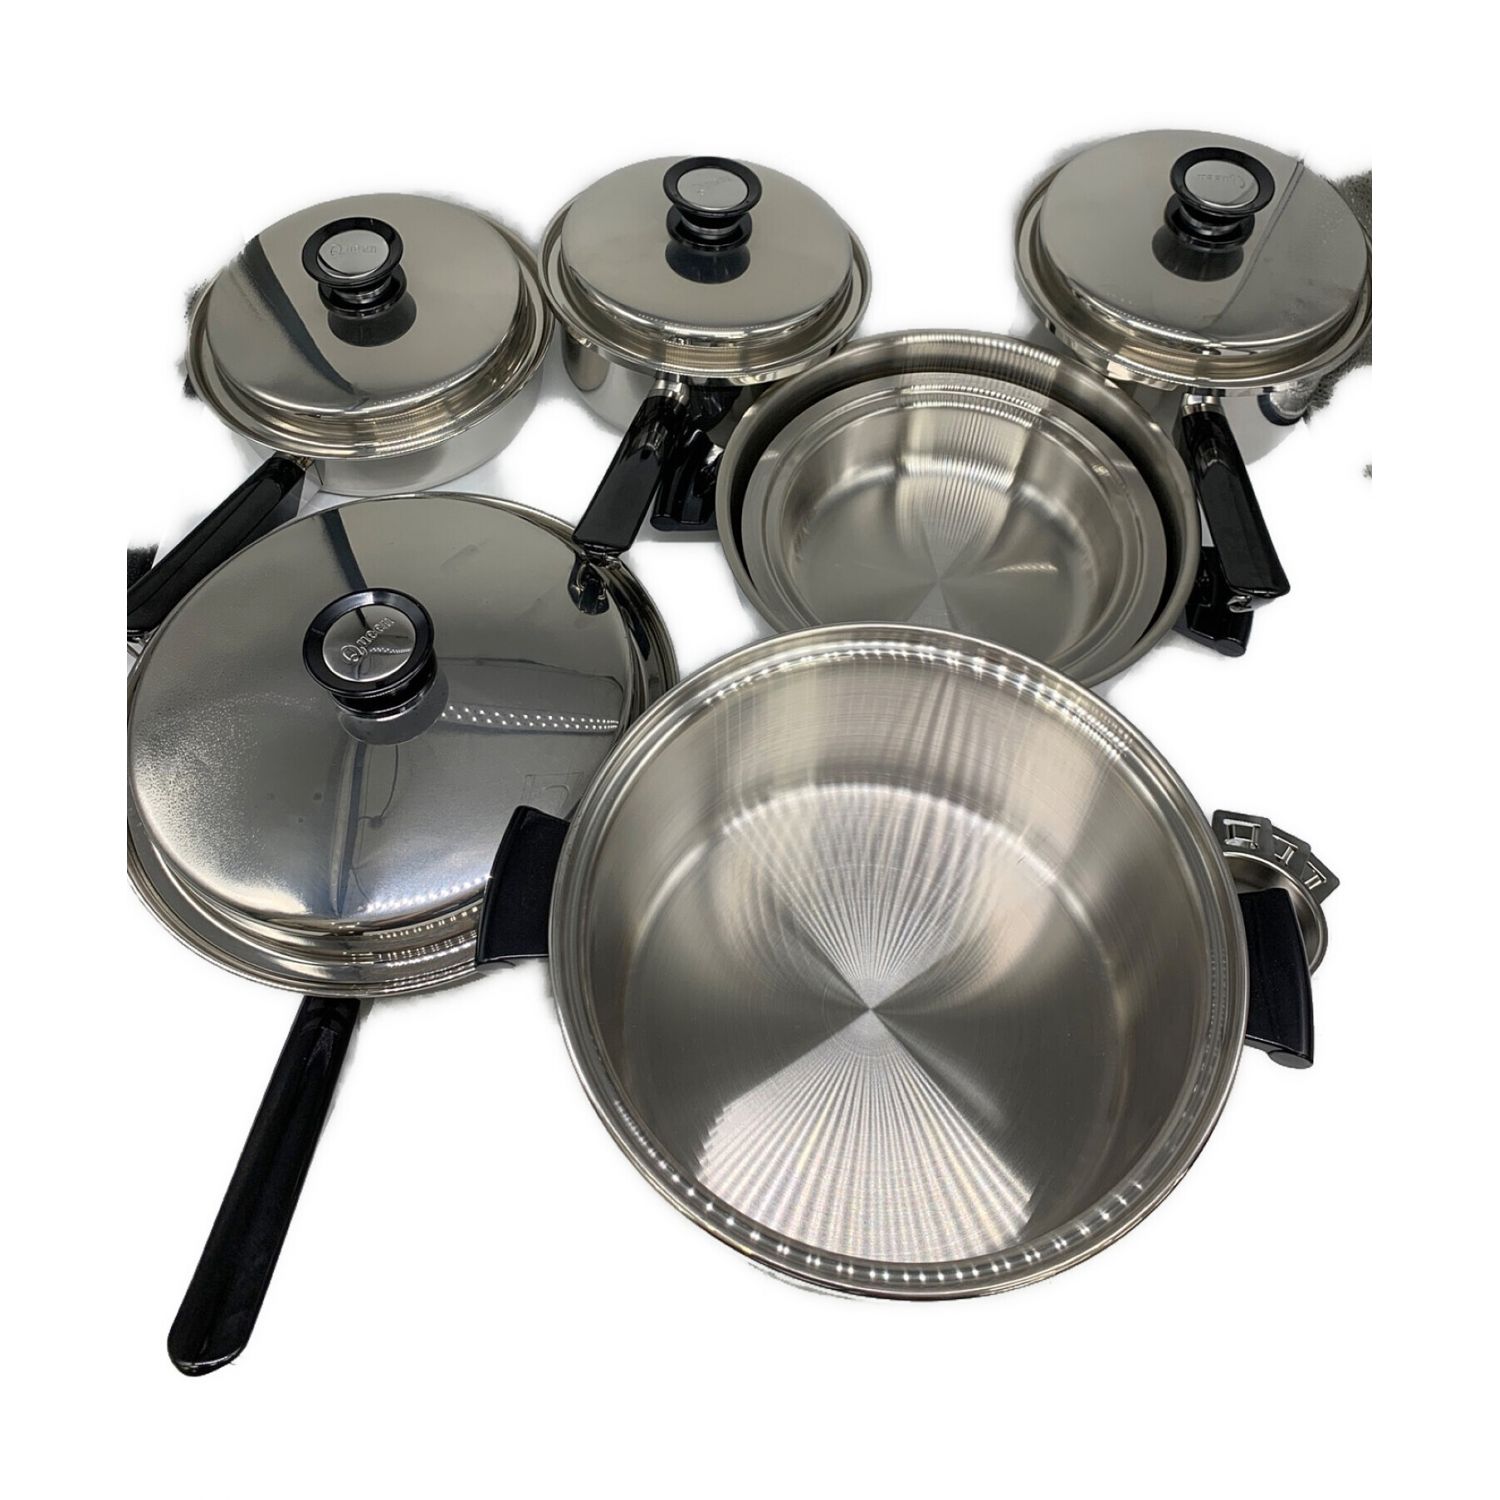 新品 未使用 アムウェイ amway 鍋 蒸し器 フライパン セット - 調理器具